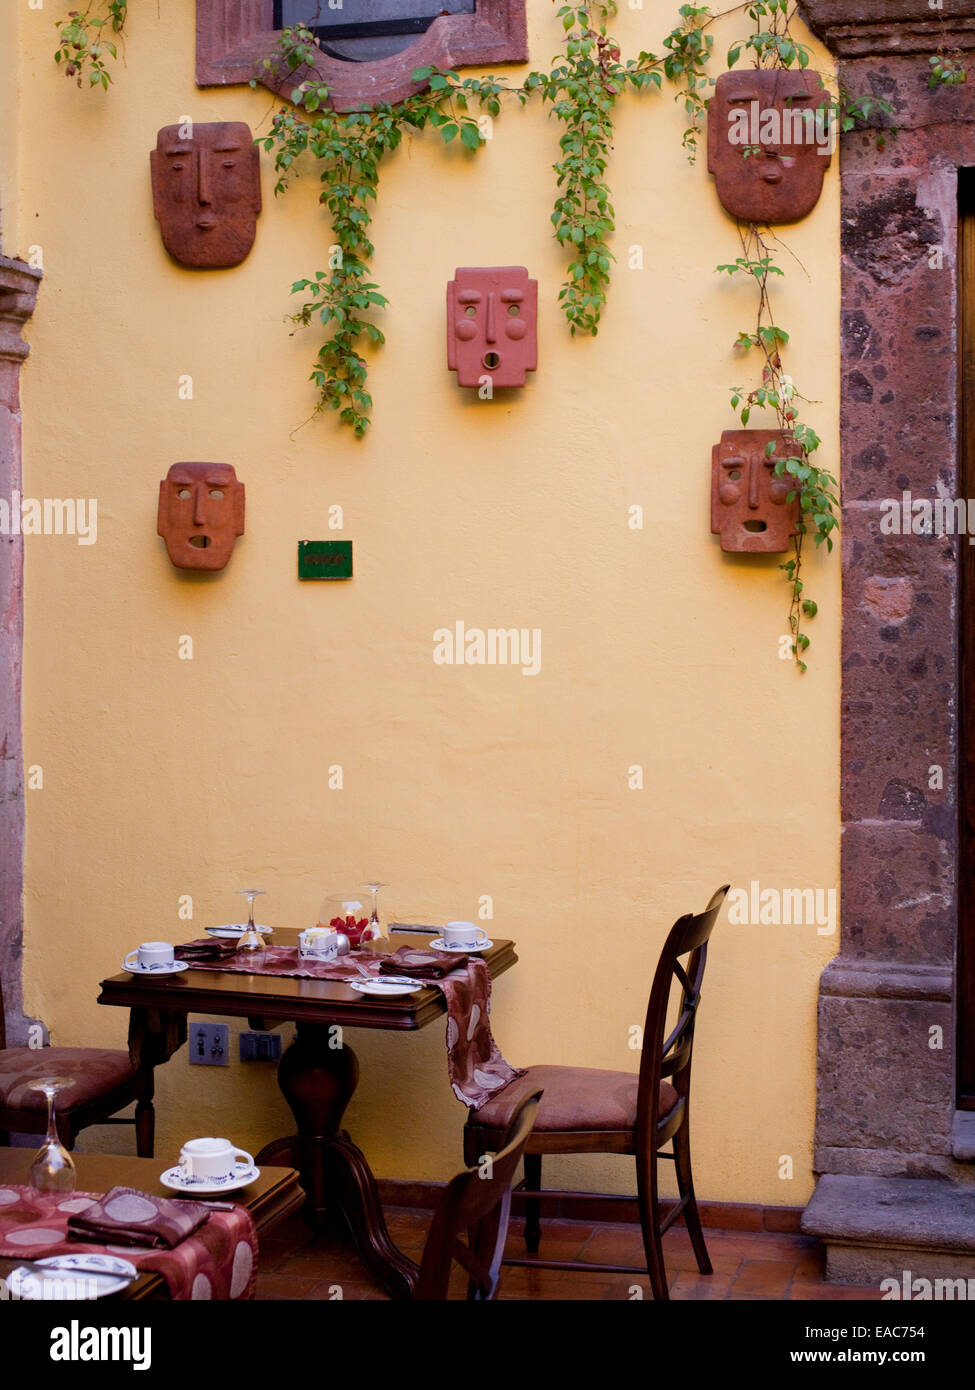 Cortile sala da pranzo in Messico con maschere in ceramica Foto Stock